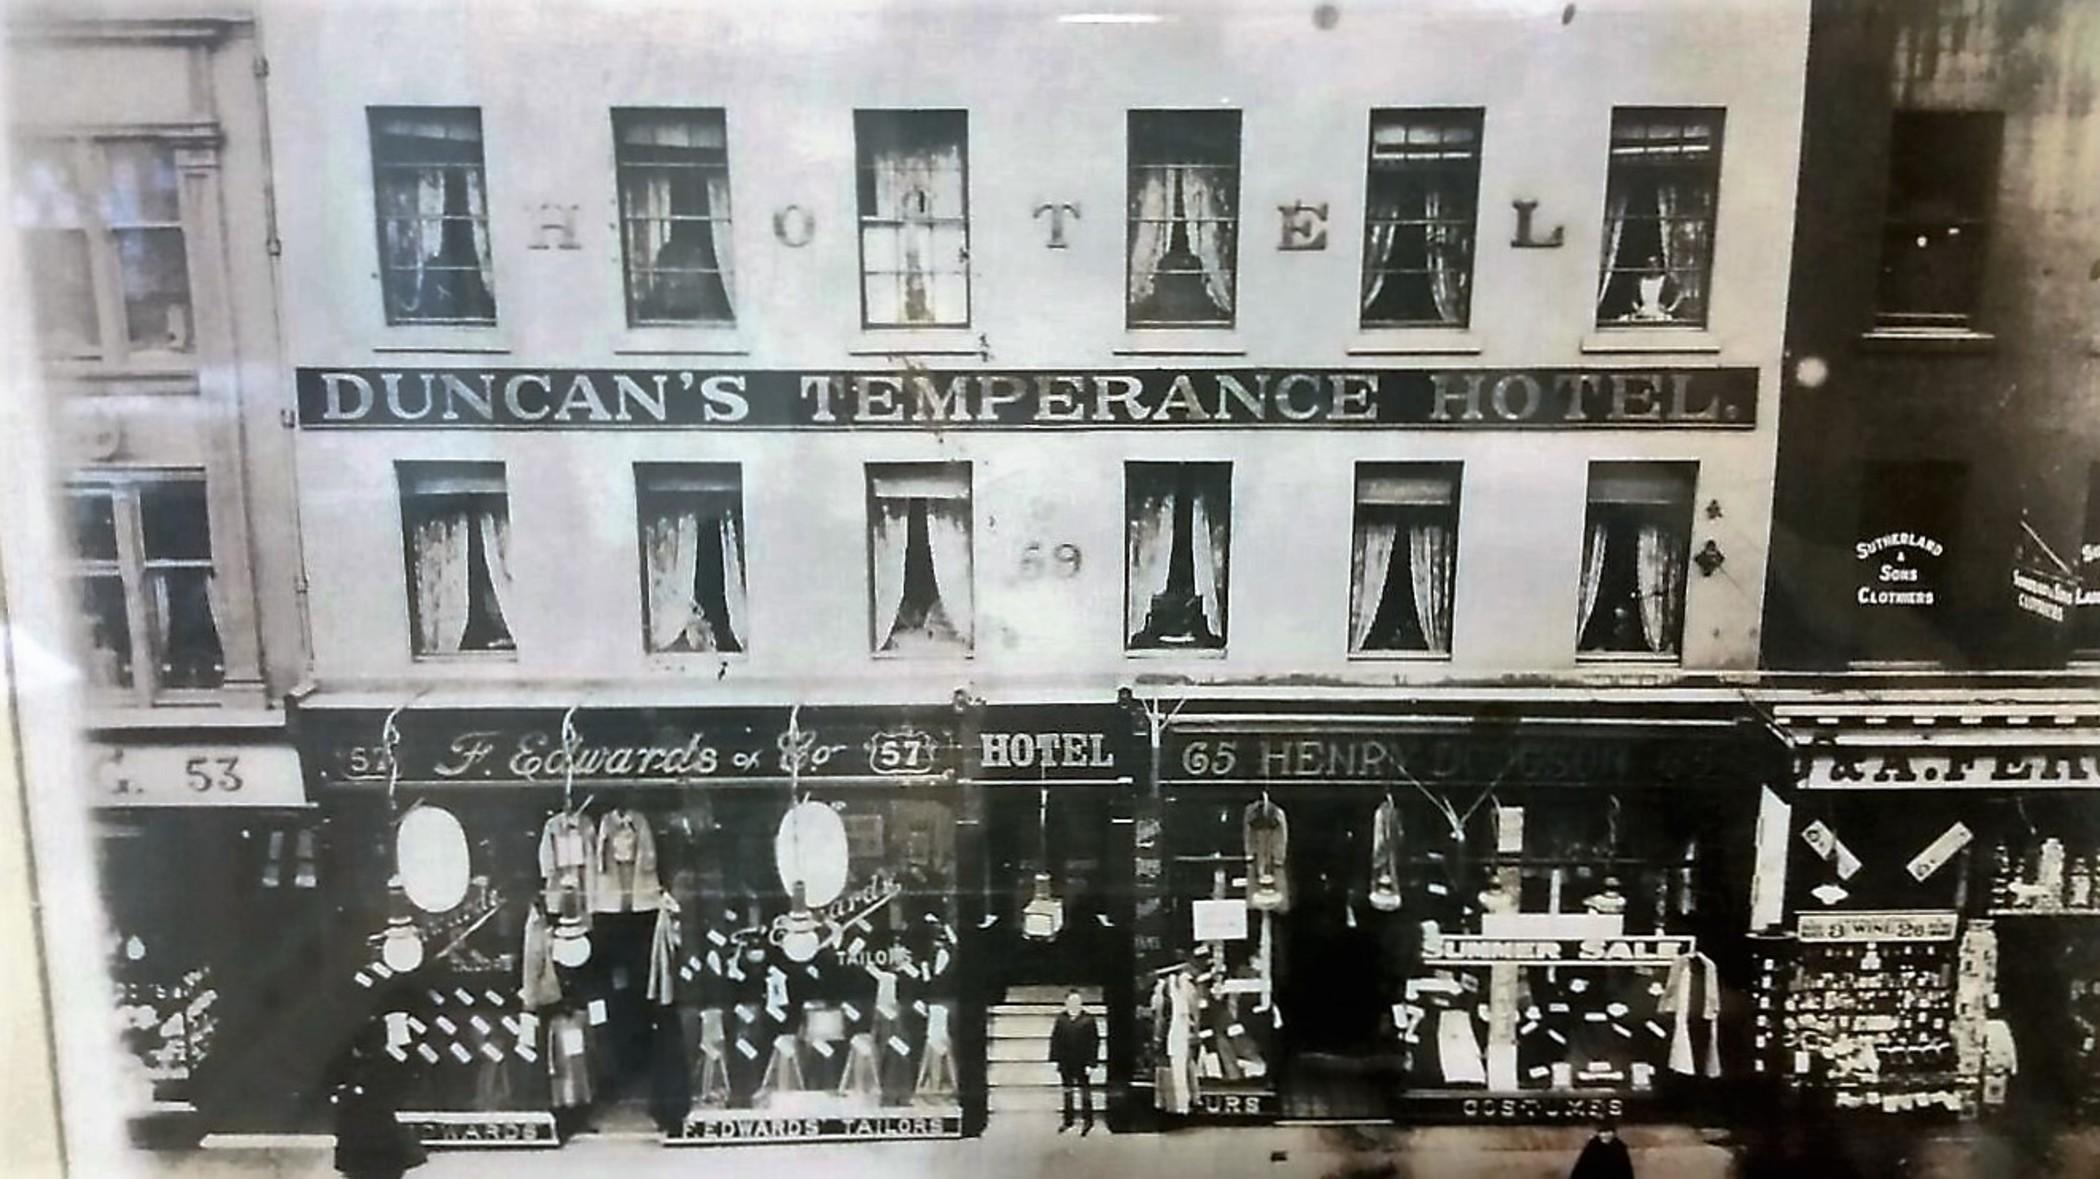 גלאזגו Rennie Mackintosh Hotel - Central Station מראה חיצוני תמונה